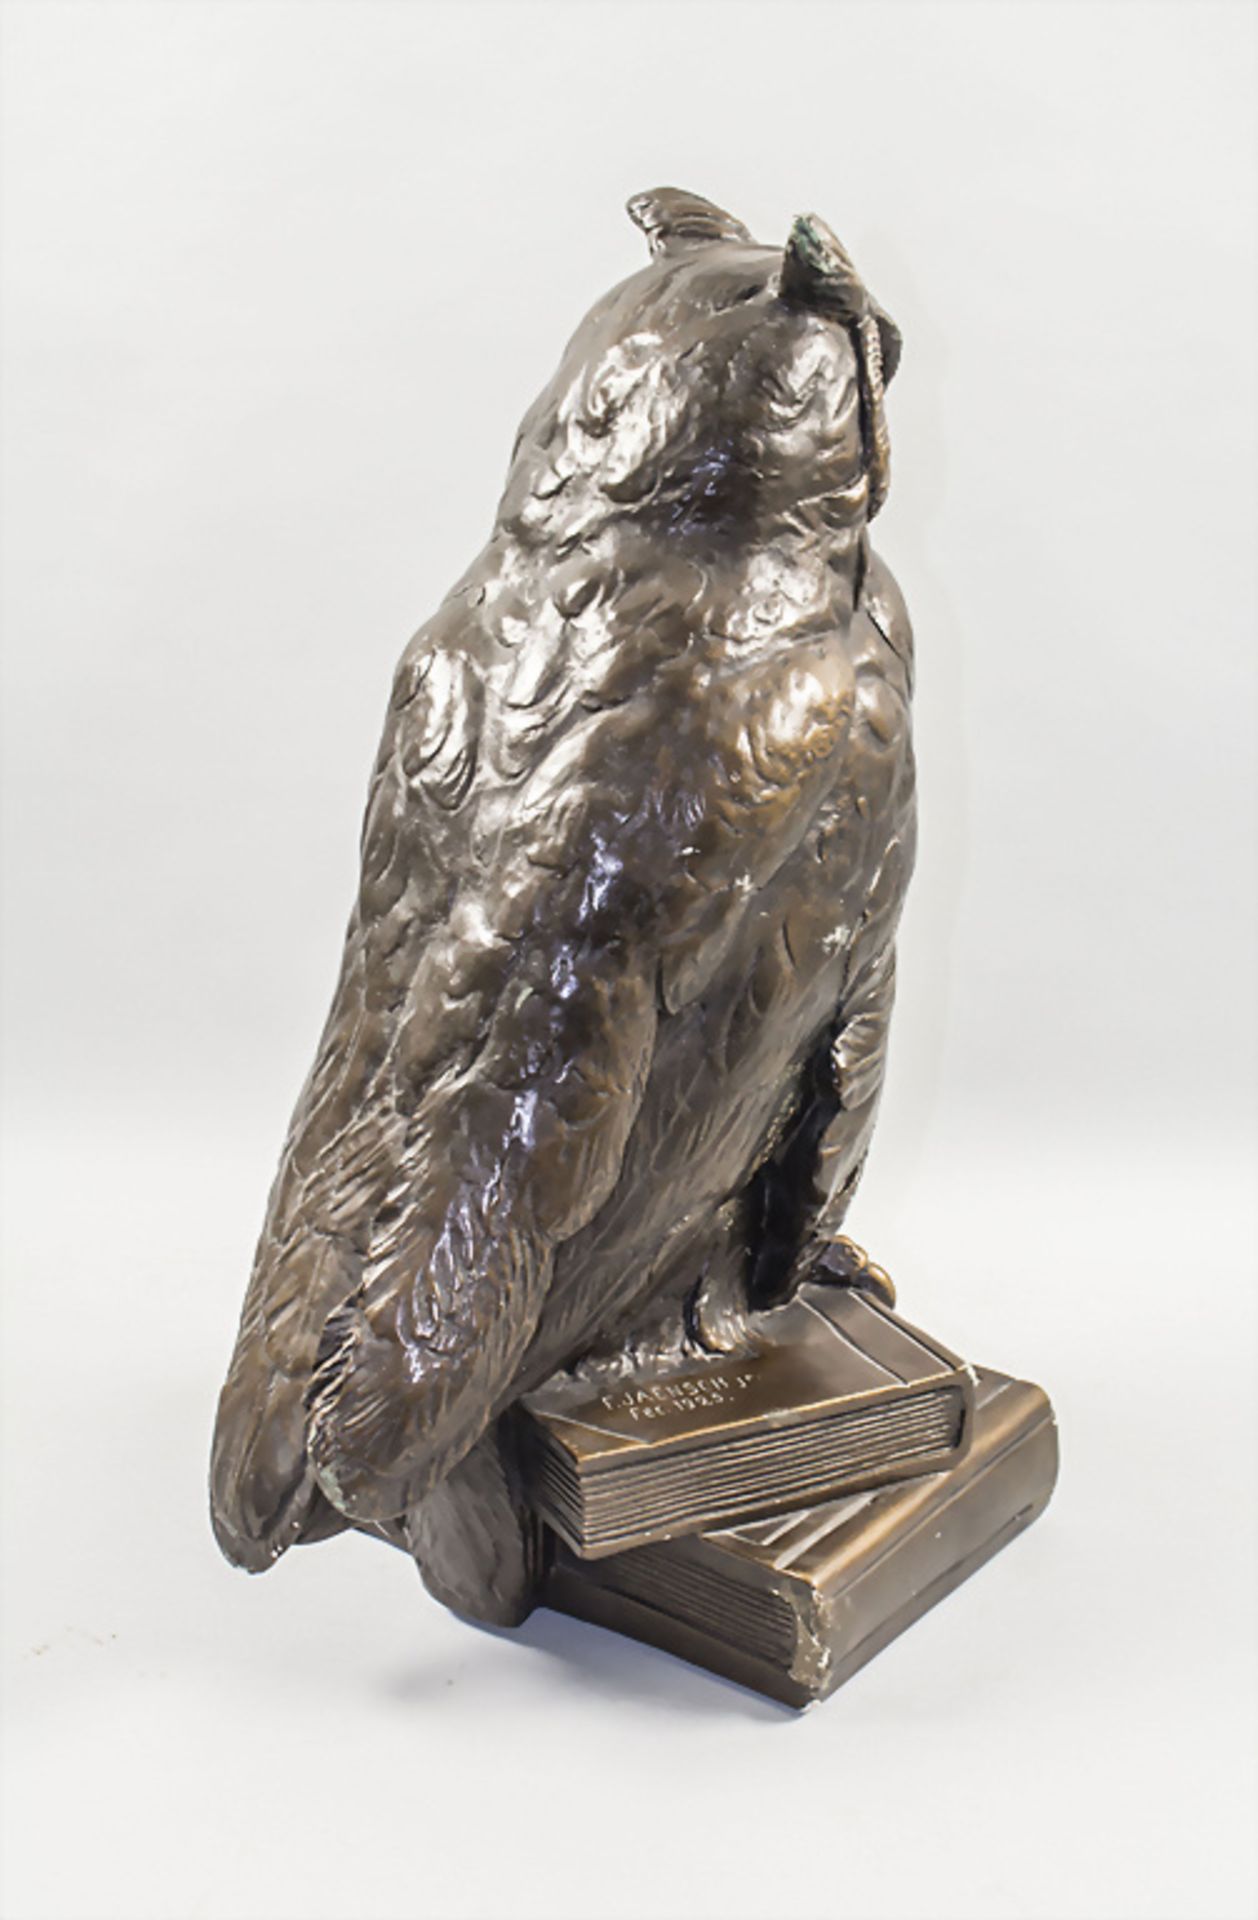 Keramikfigur 'Eule' / A ceramic figure of an owl, nach 1925 - Image 4 of 6